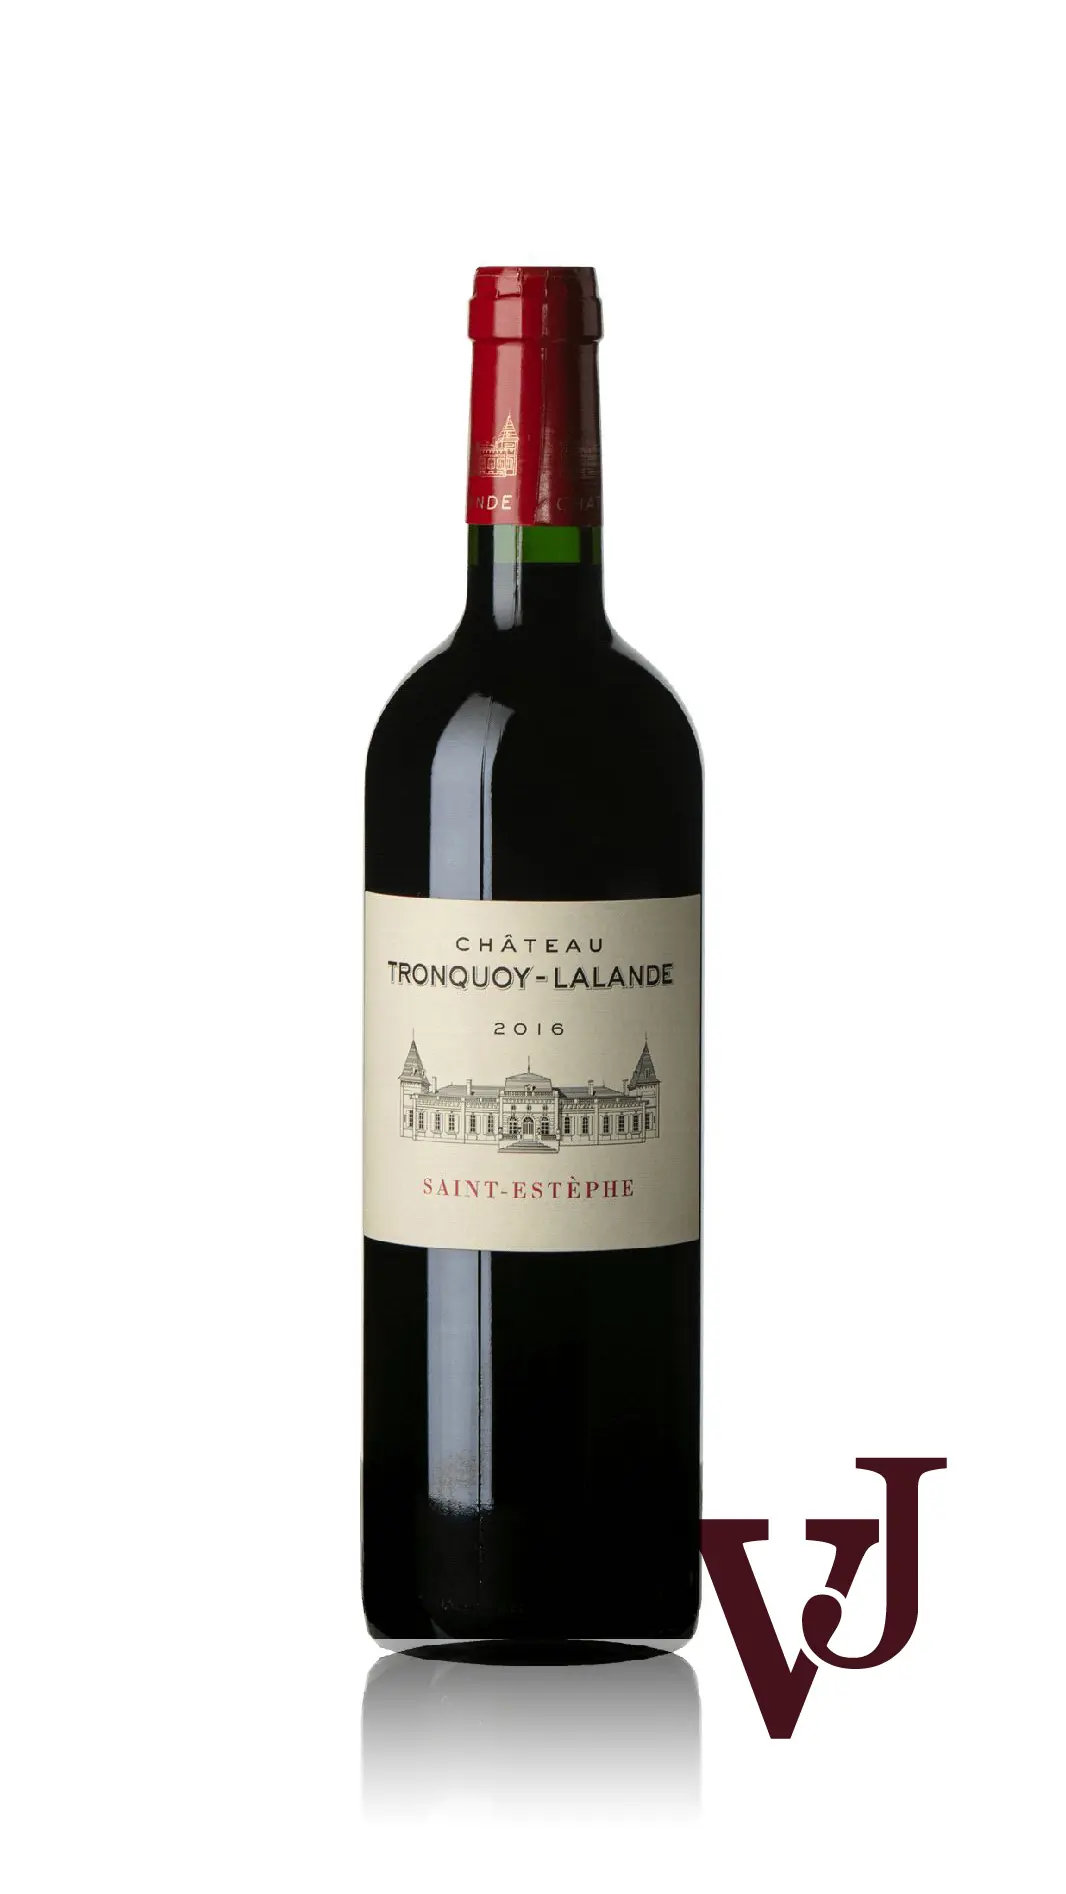 Rött Vin - Chateau Tronquoy-Lalande Lalande 2016 artikel nummer 9245101 från producenten SCEA du Chateau Tronquoy-Lalande från området Frankrike - Vinjournalen.se